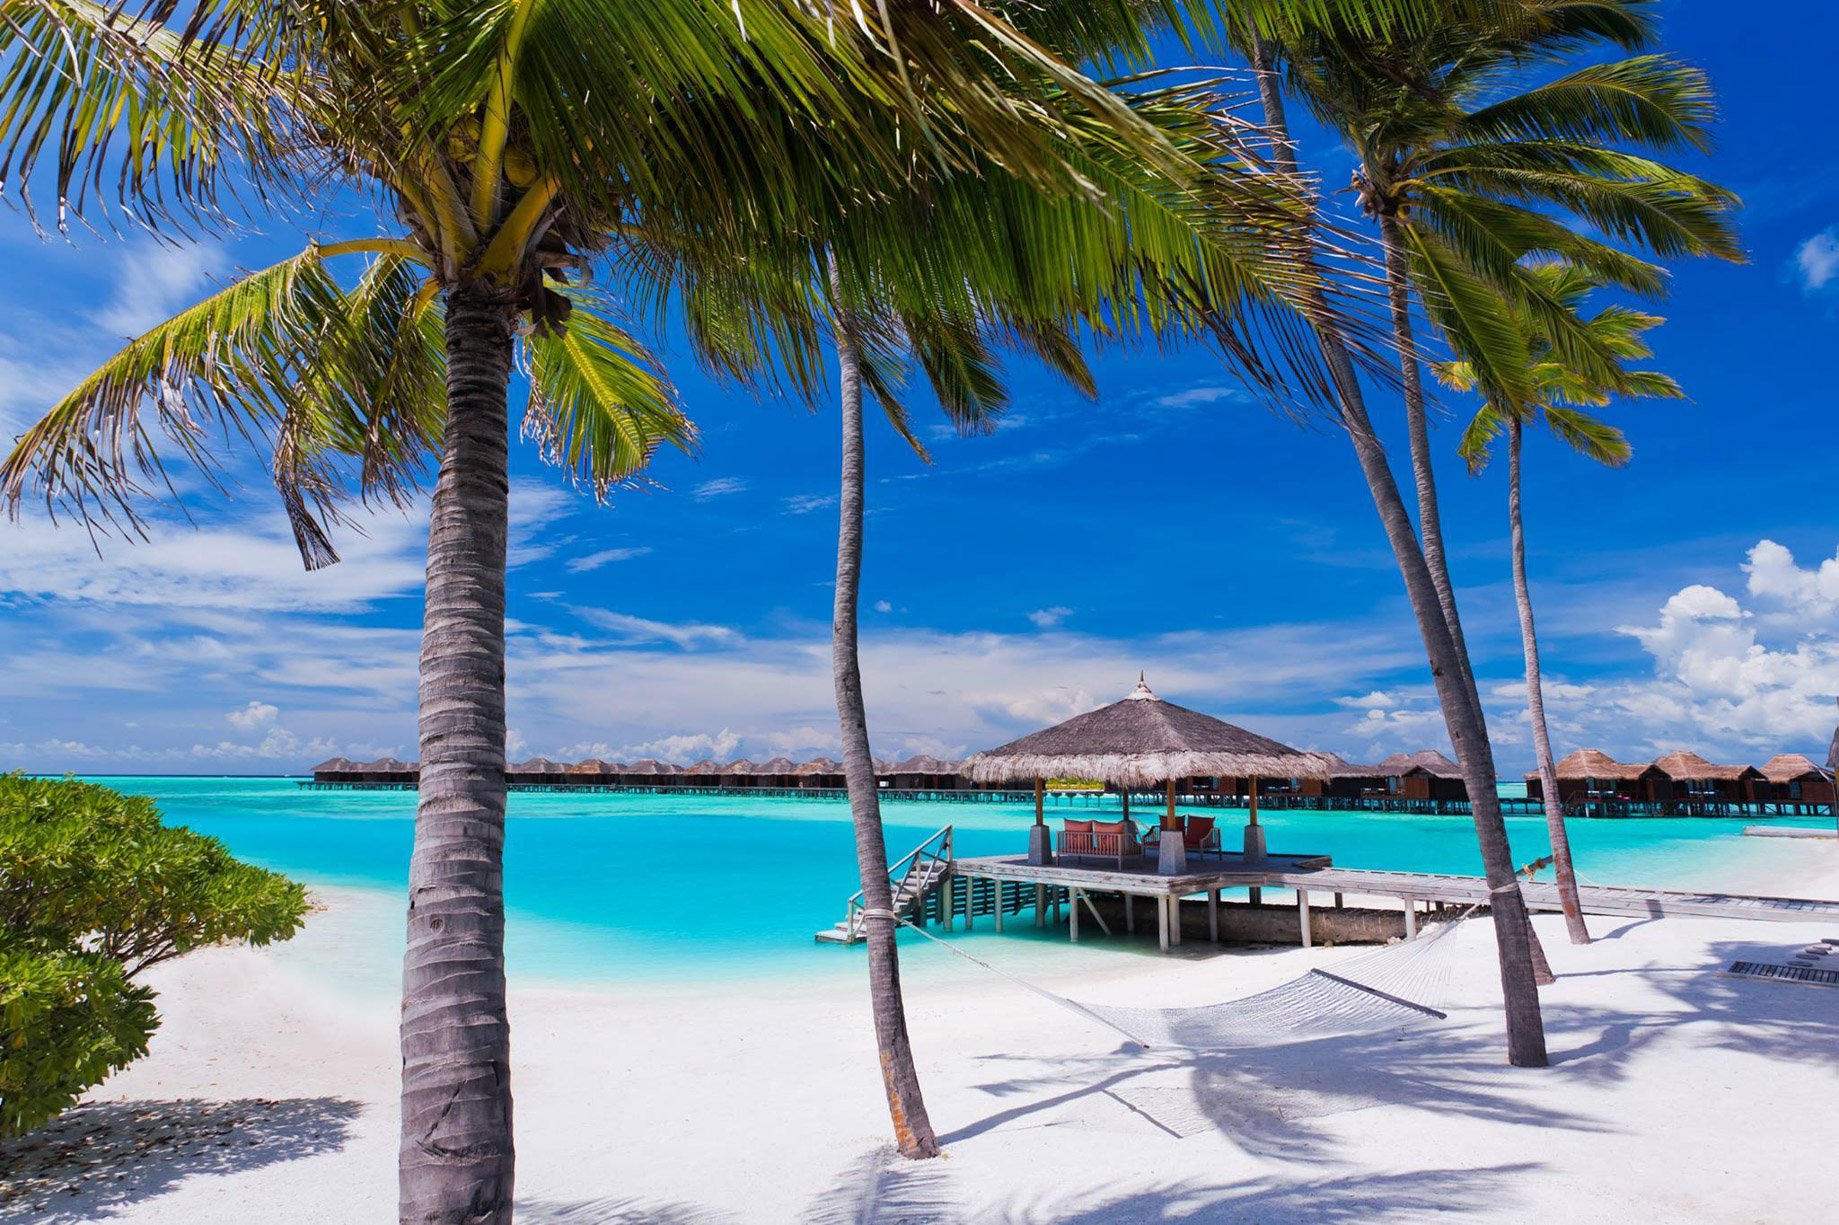 Anantara Veli Maldives Resort - South Male Atoll, Maldives - White Sand Beach View